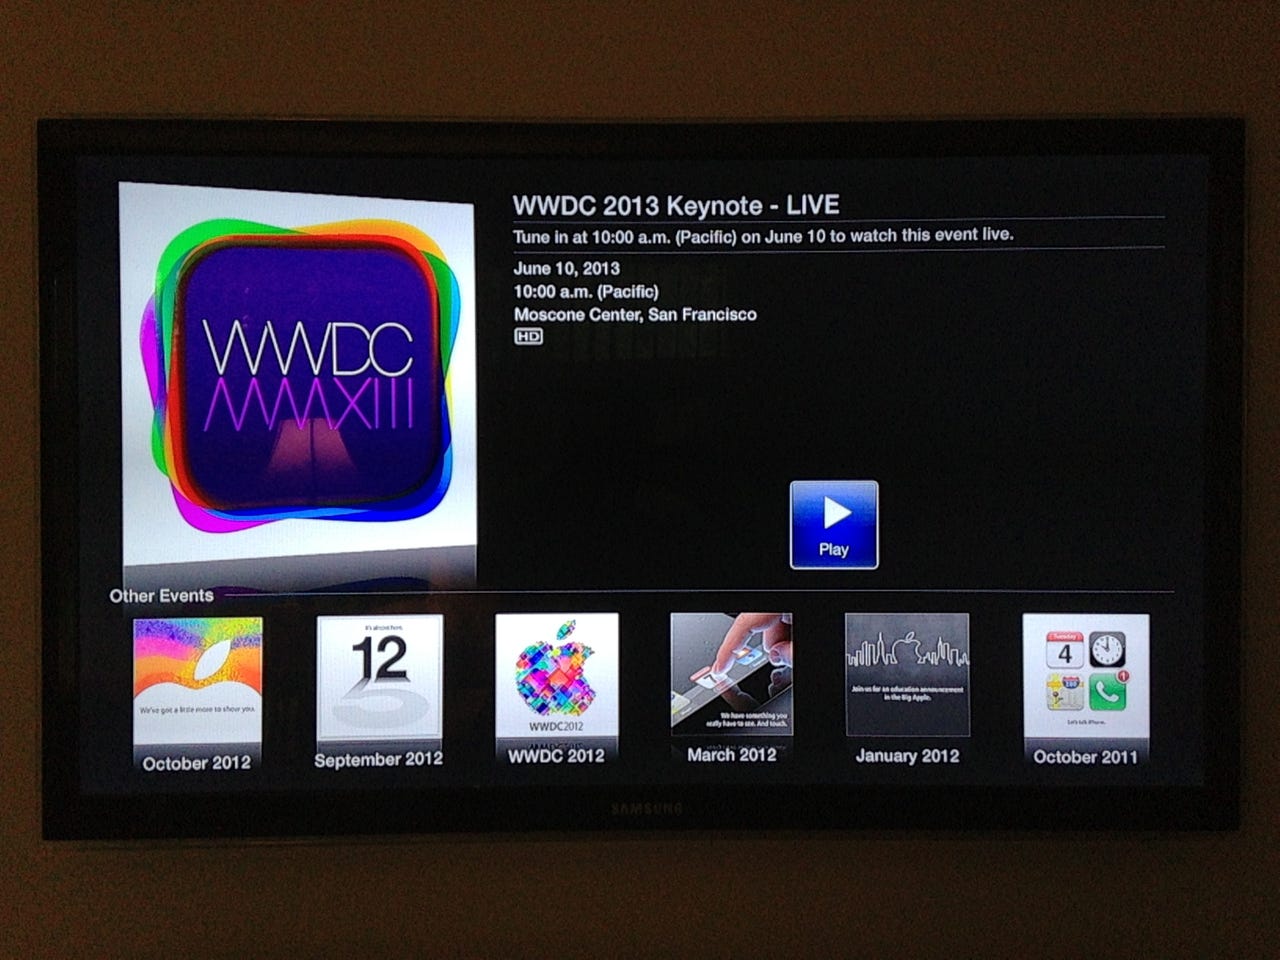 Confirmed: WWDC keynote address to stream on Apple TV; iOS app possible - Jason O'Grady